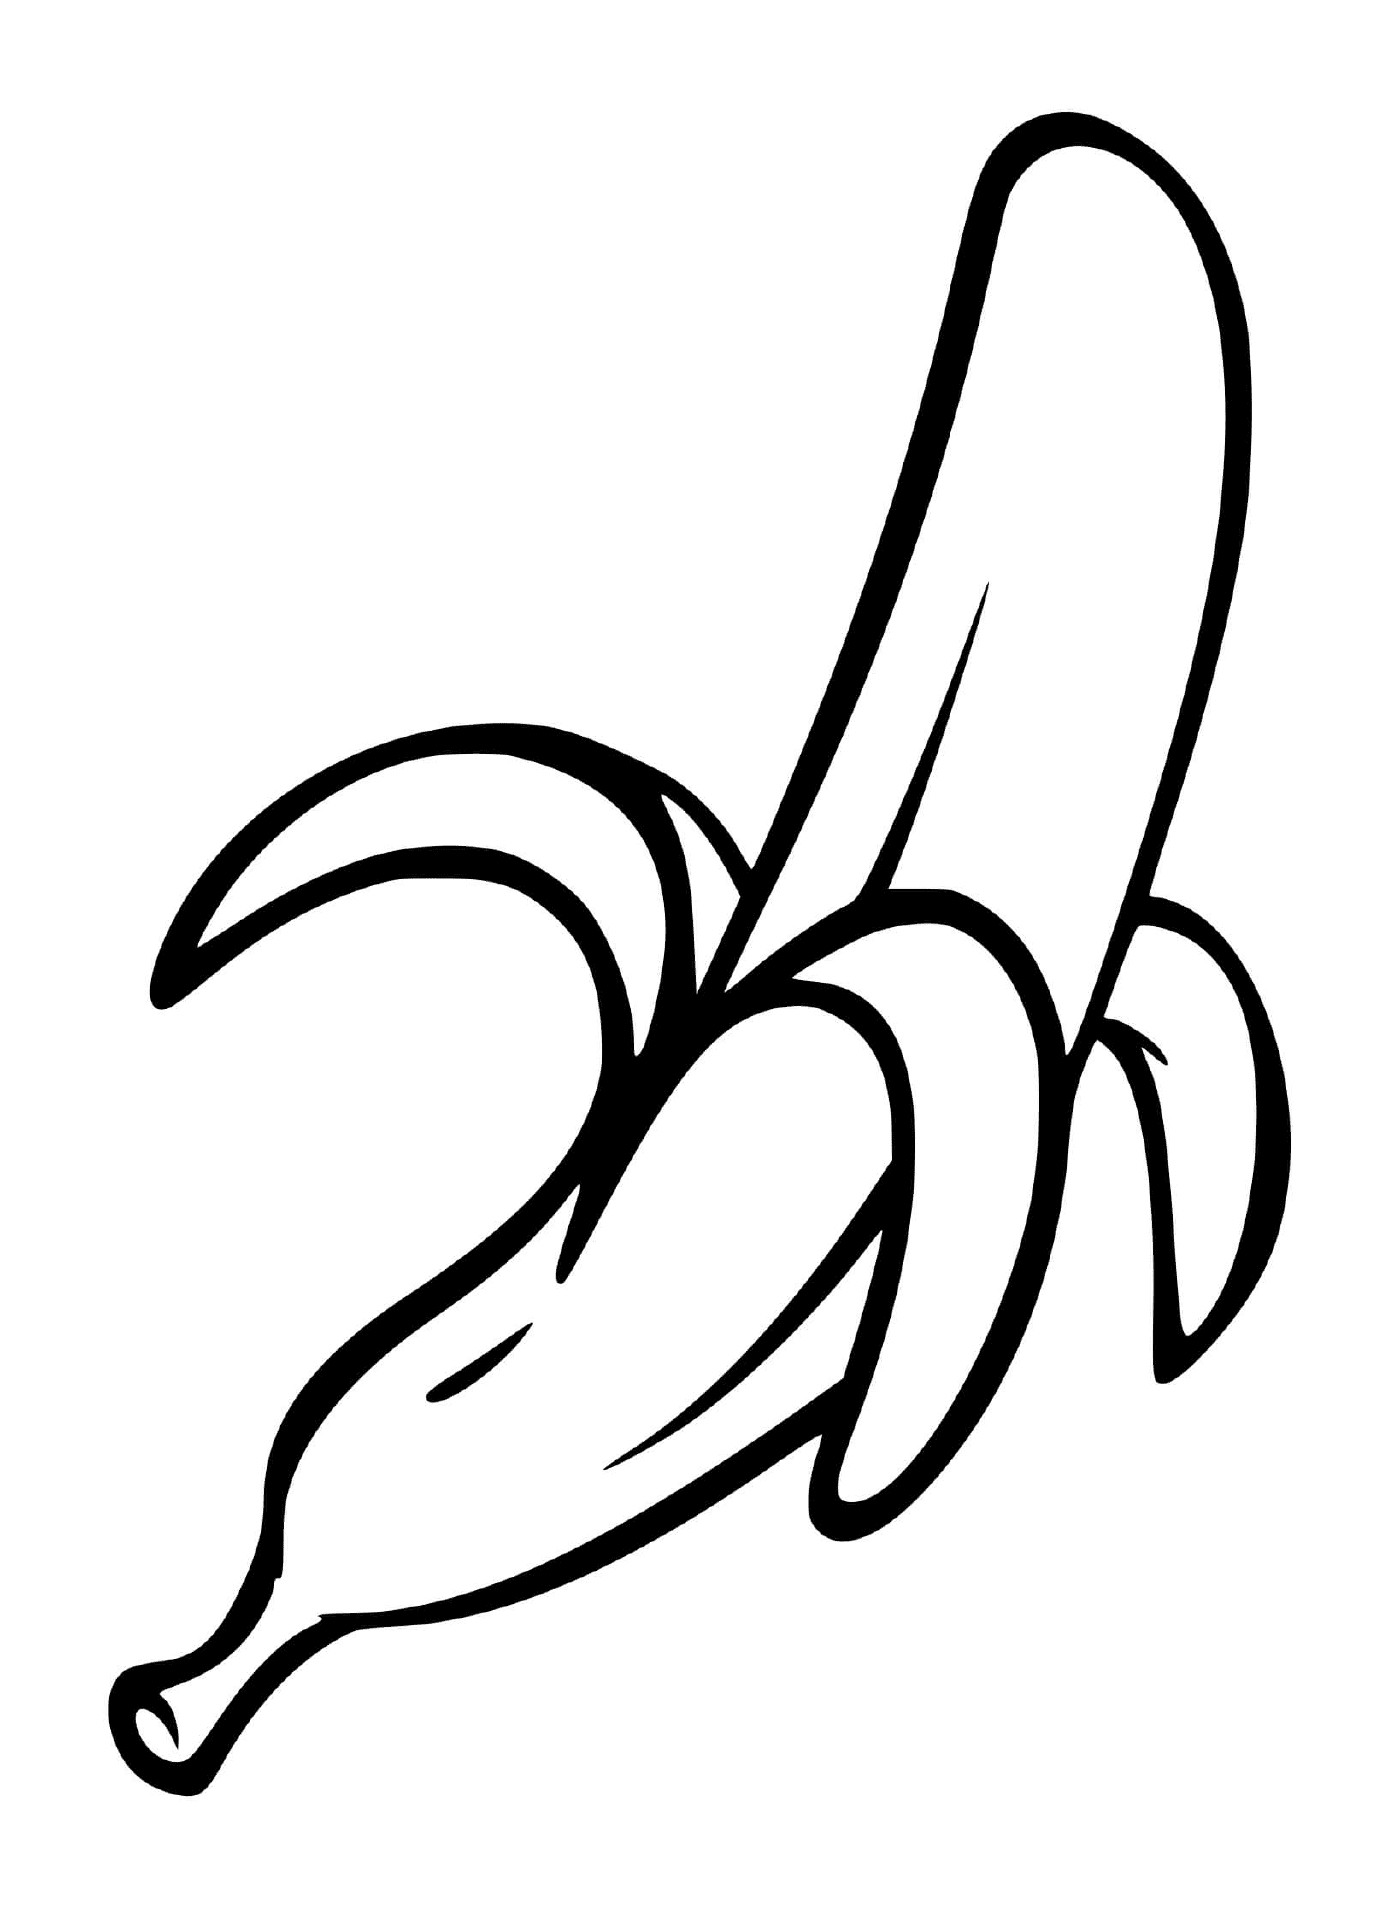  A peeled banana 